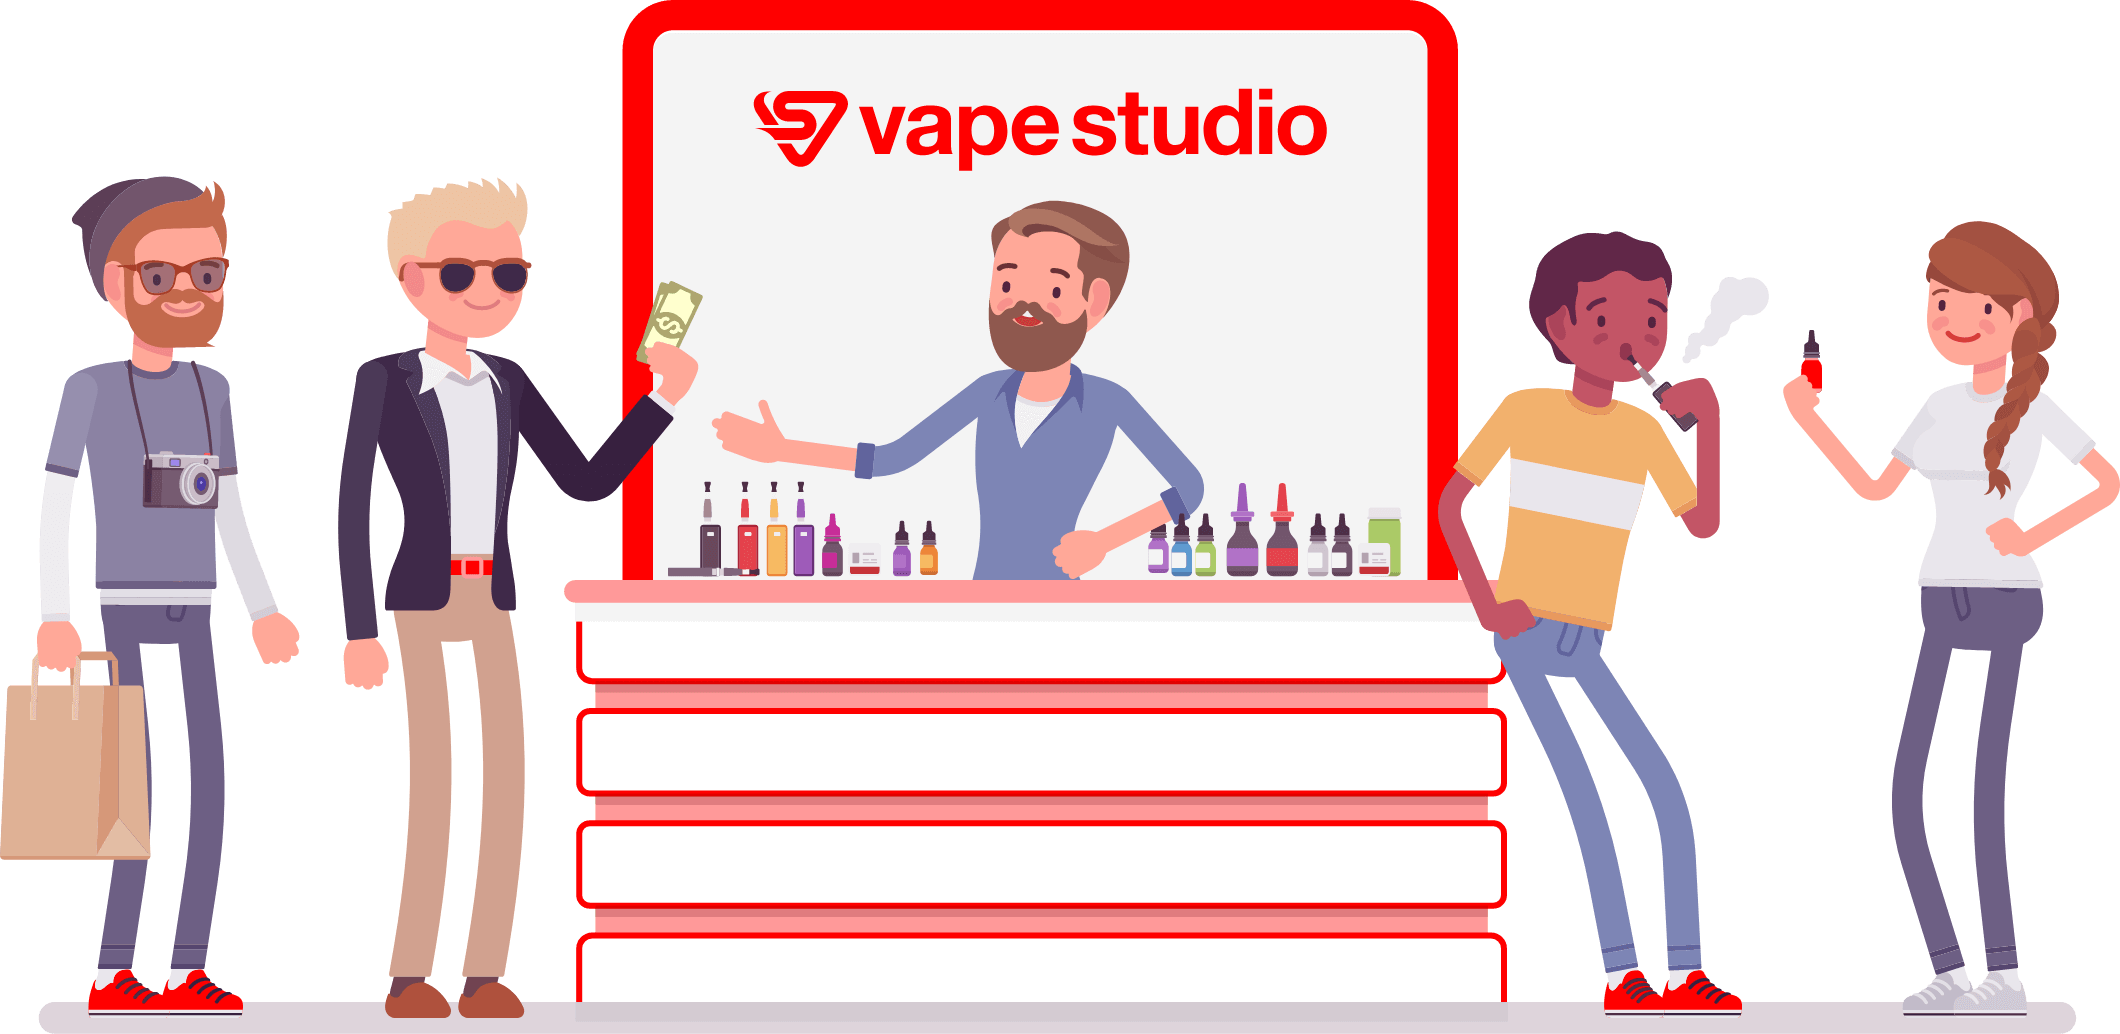 「vape studio(ベイプスタジオ)」は電子タバコ・ベイプ・シーシャ・CBD専門店です